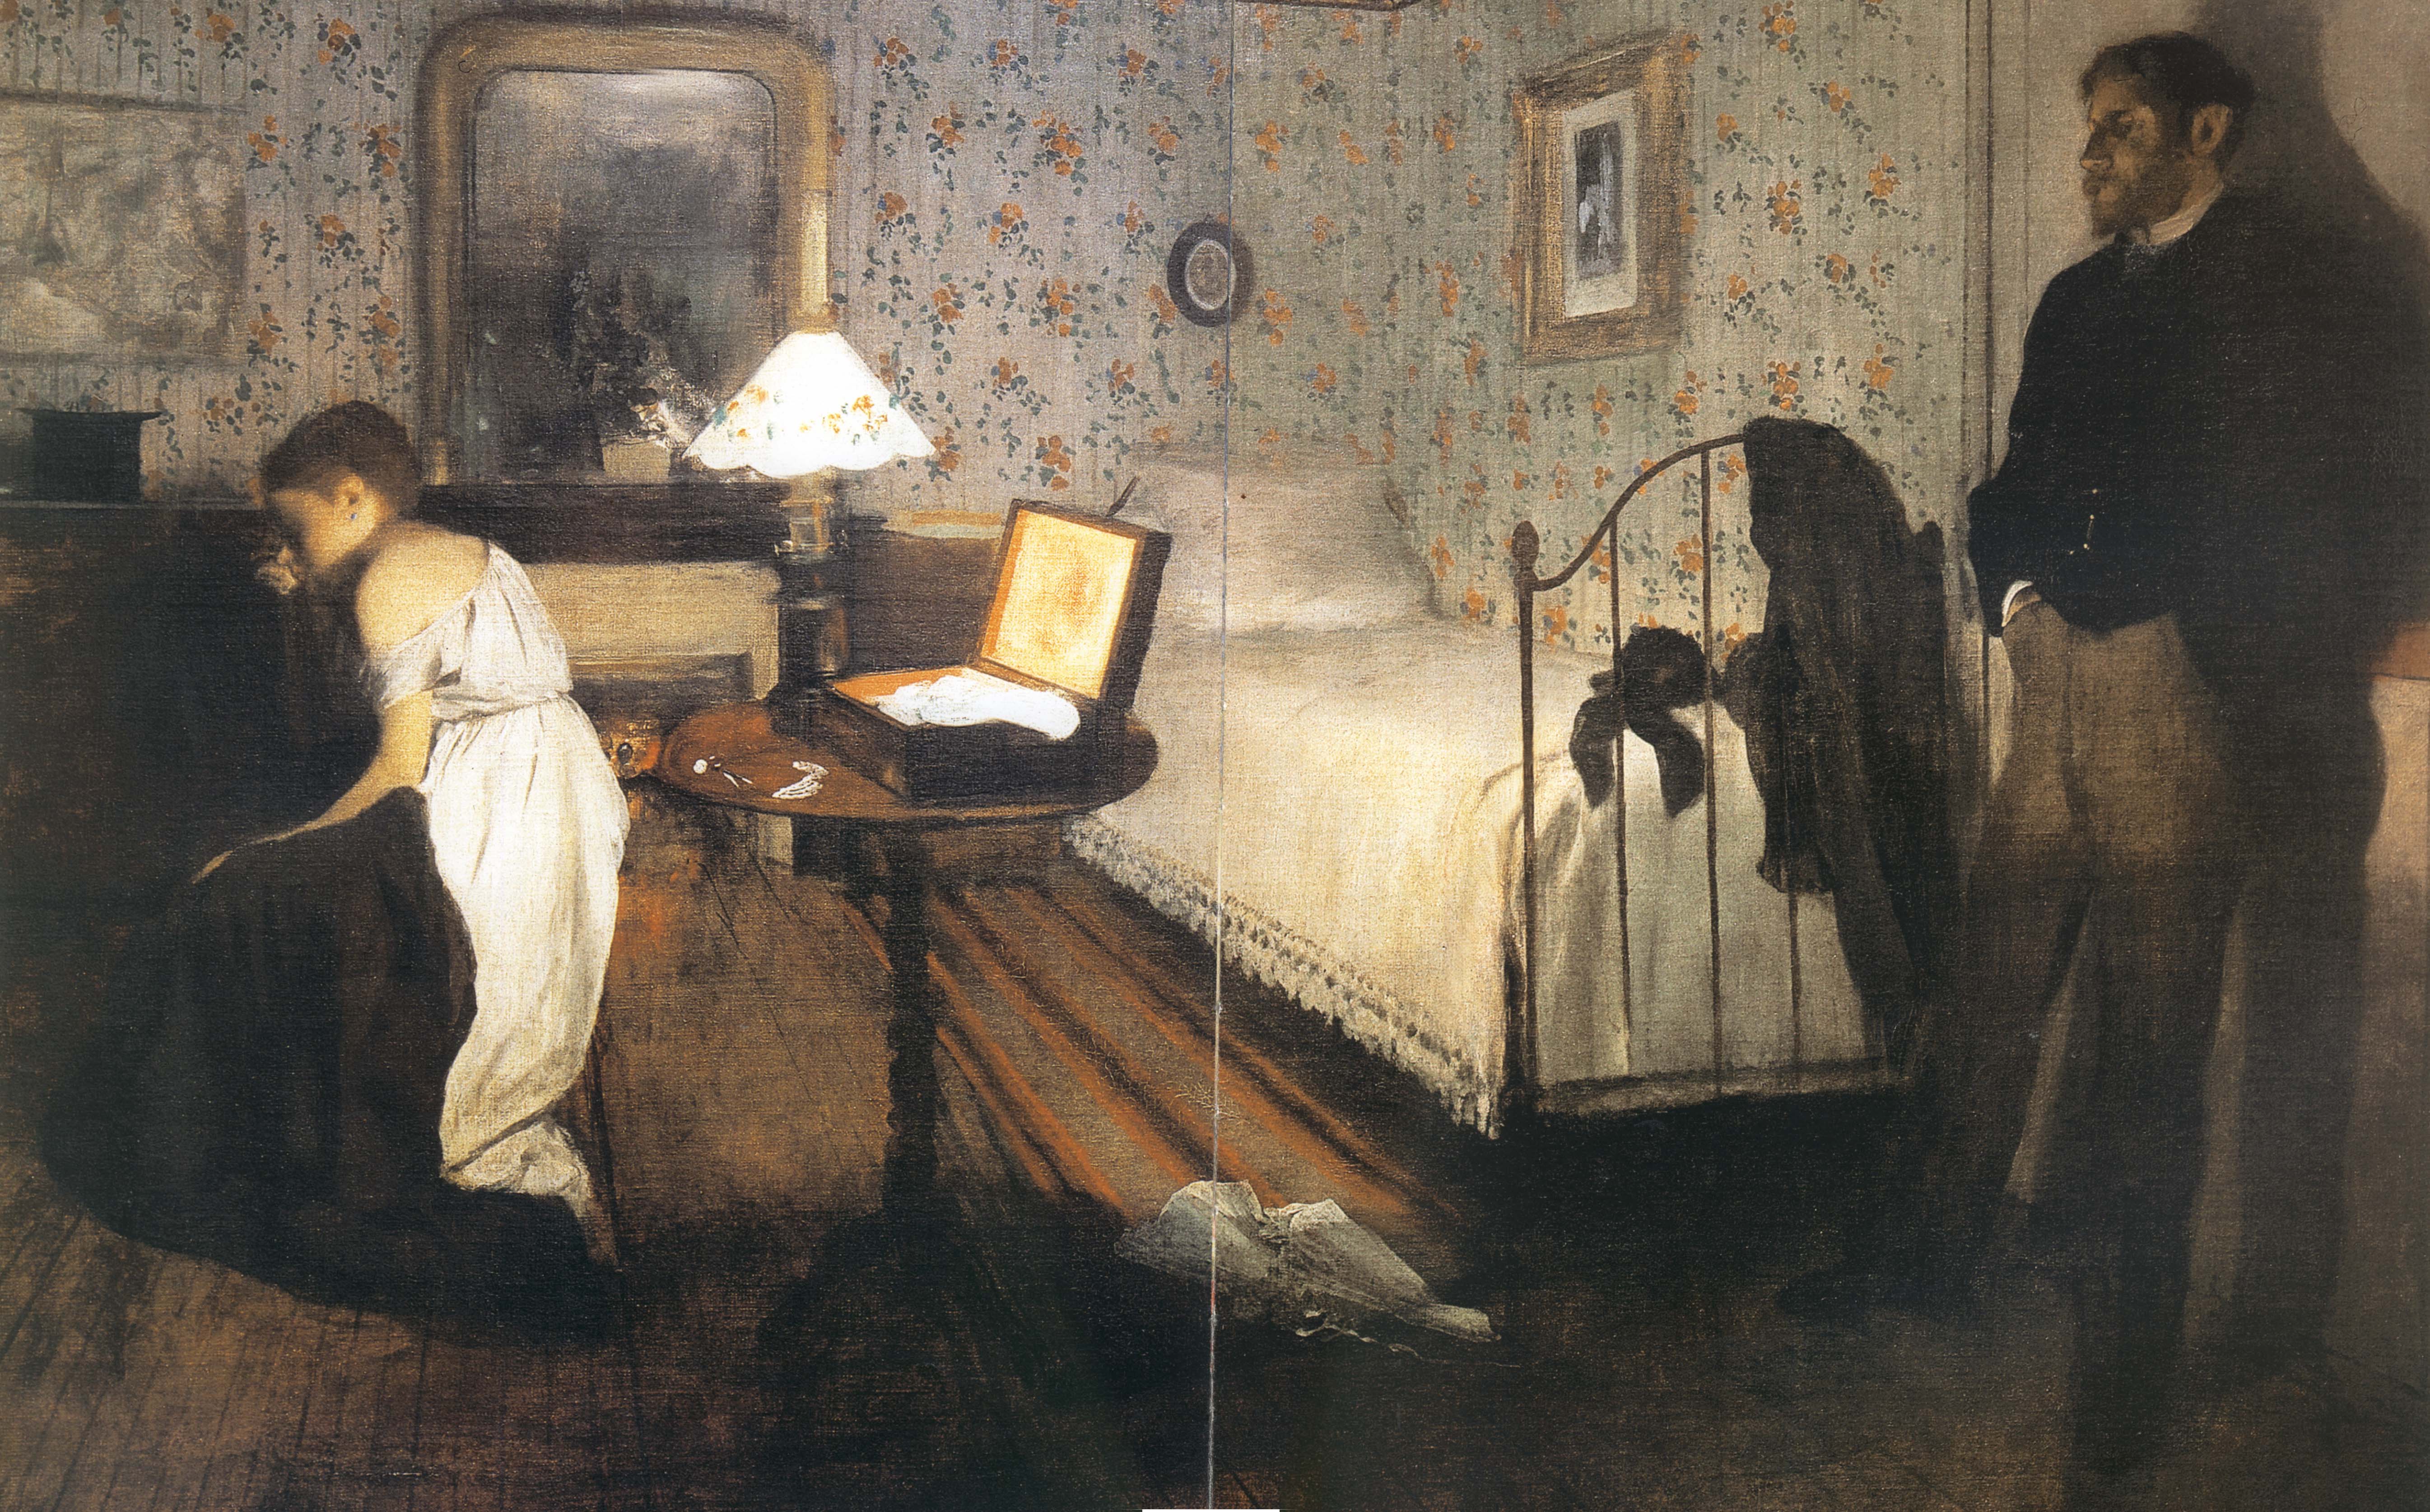 室内（强奸） by 埃德加 德加 - 1868 - 81.28 x 114.3 cm 